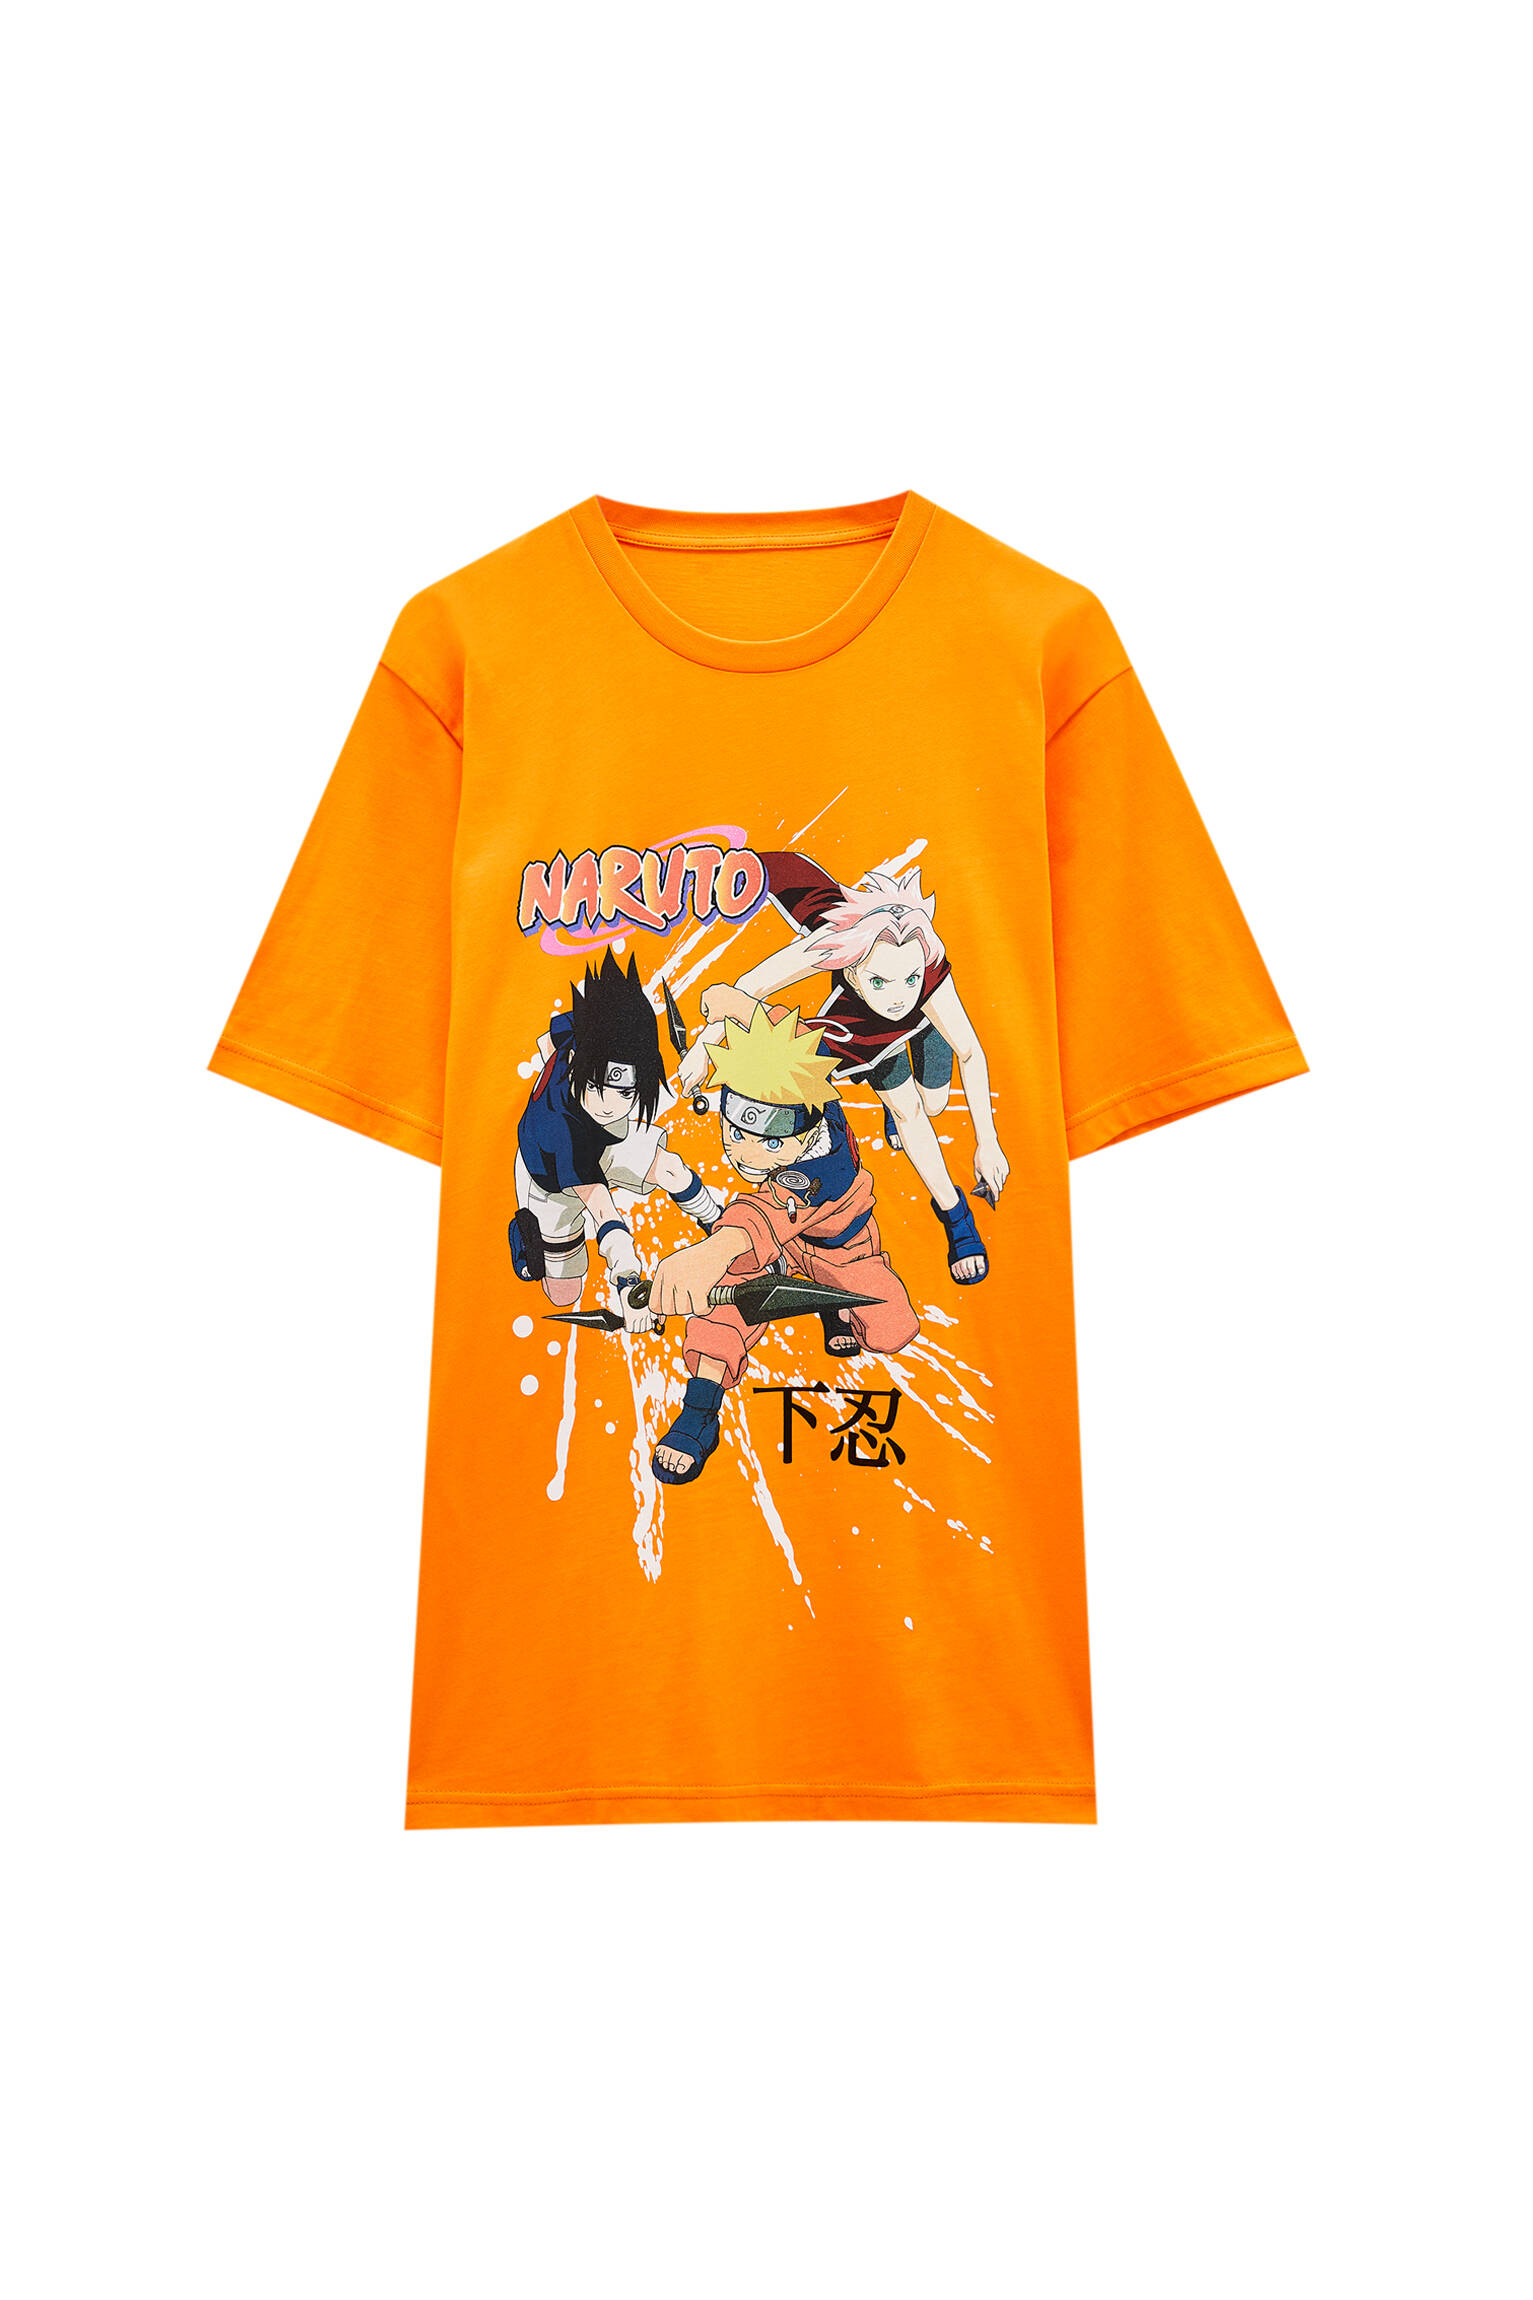 Pull&bear Homme T-shirt Naruto Orange à Col Rond Et Manches Courtes, Avec Illustration Contrastante. Orange Xl